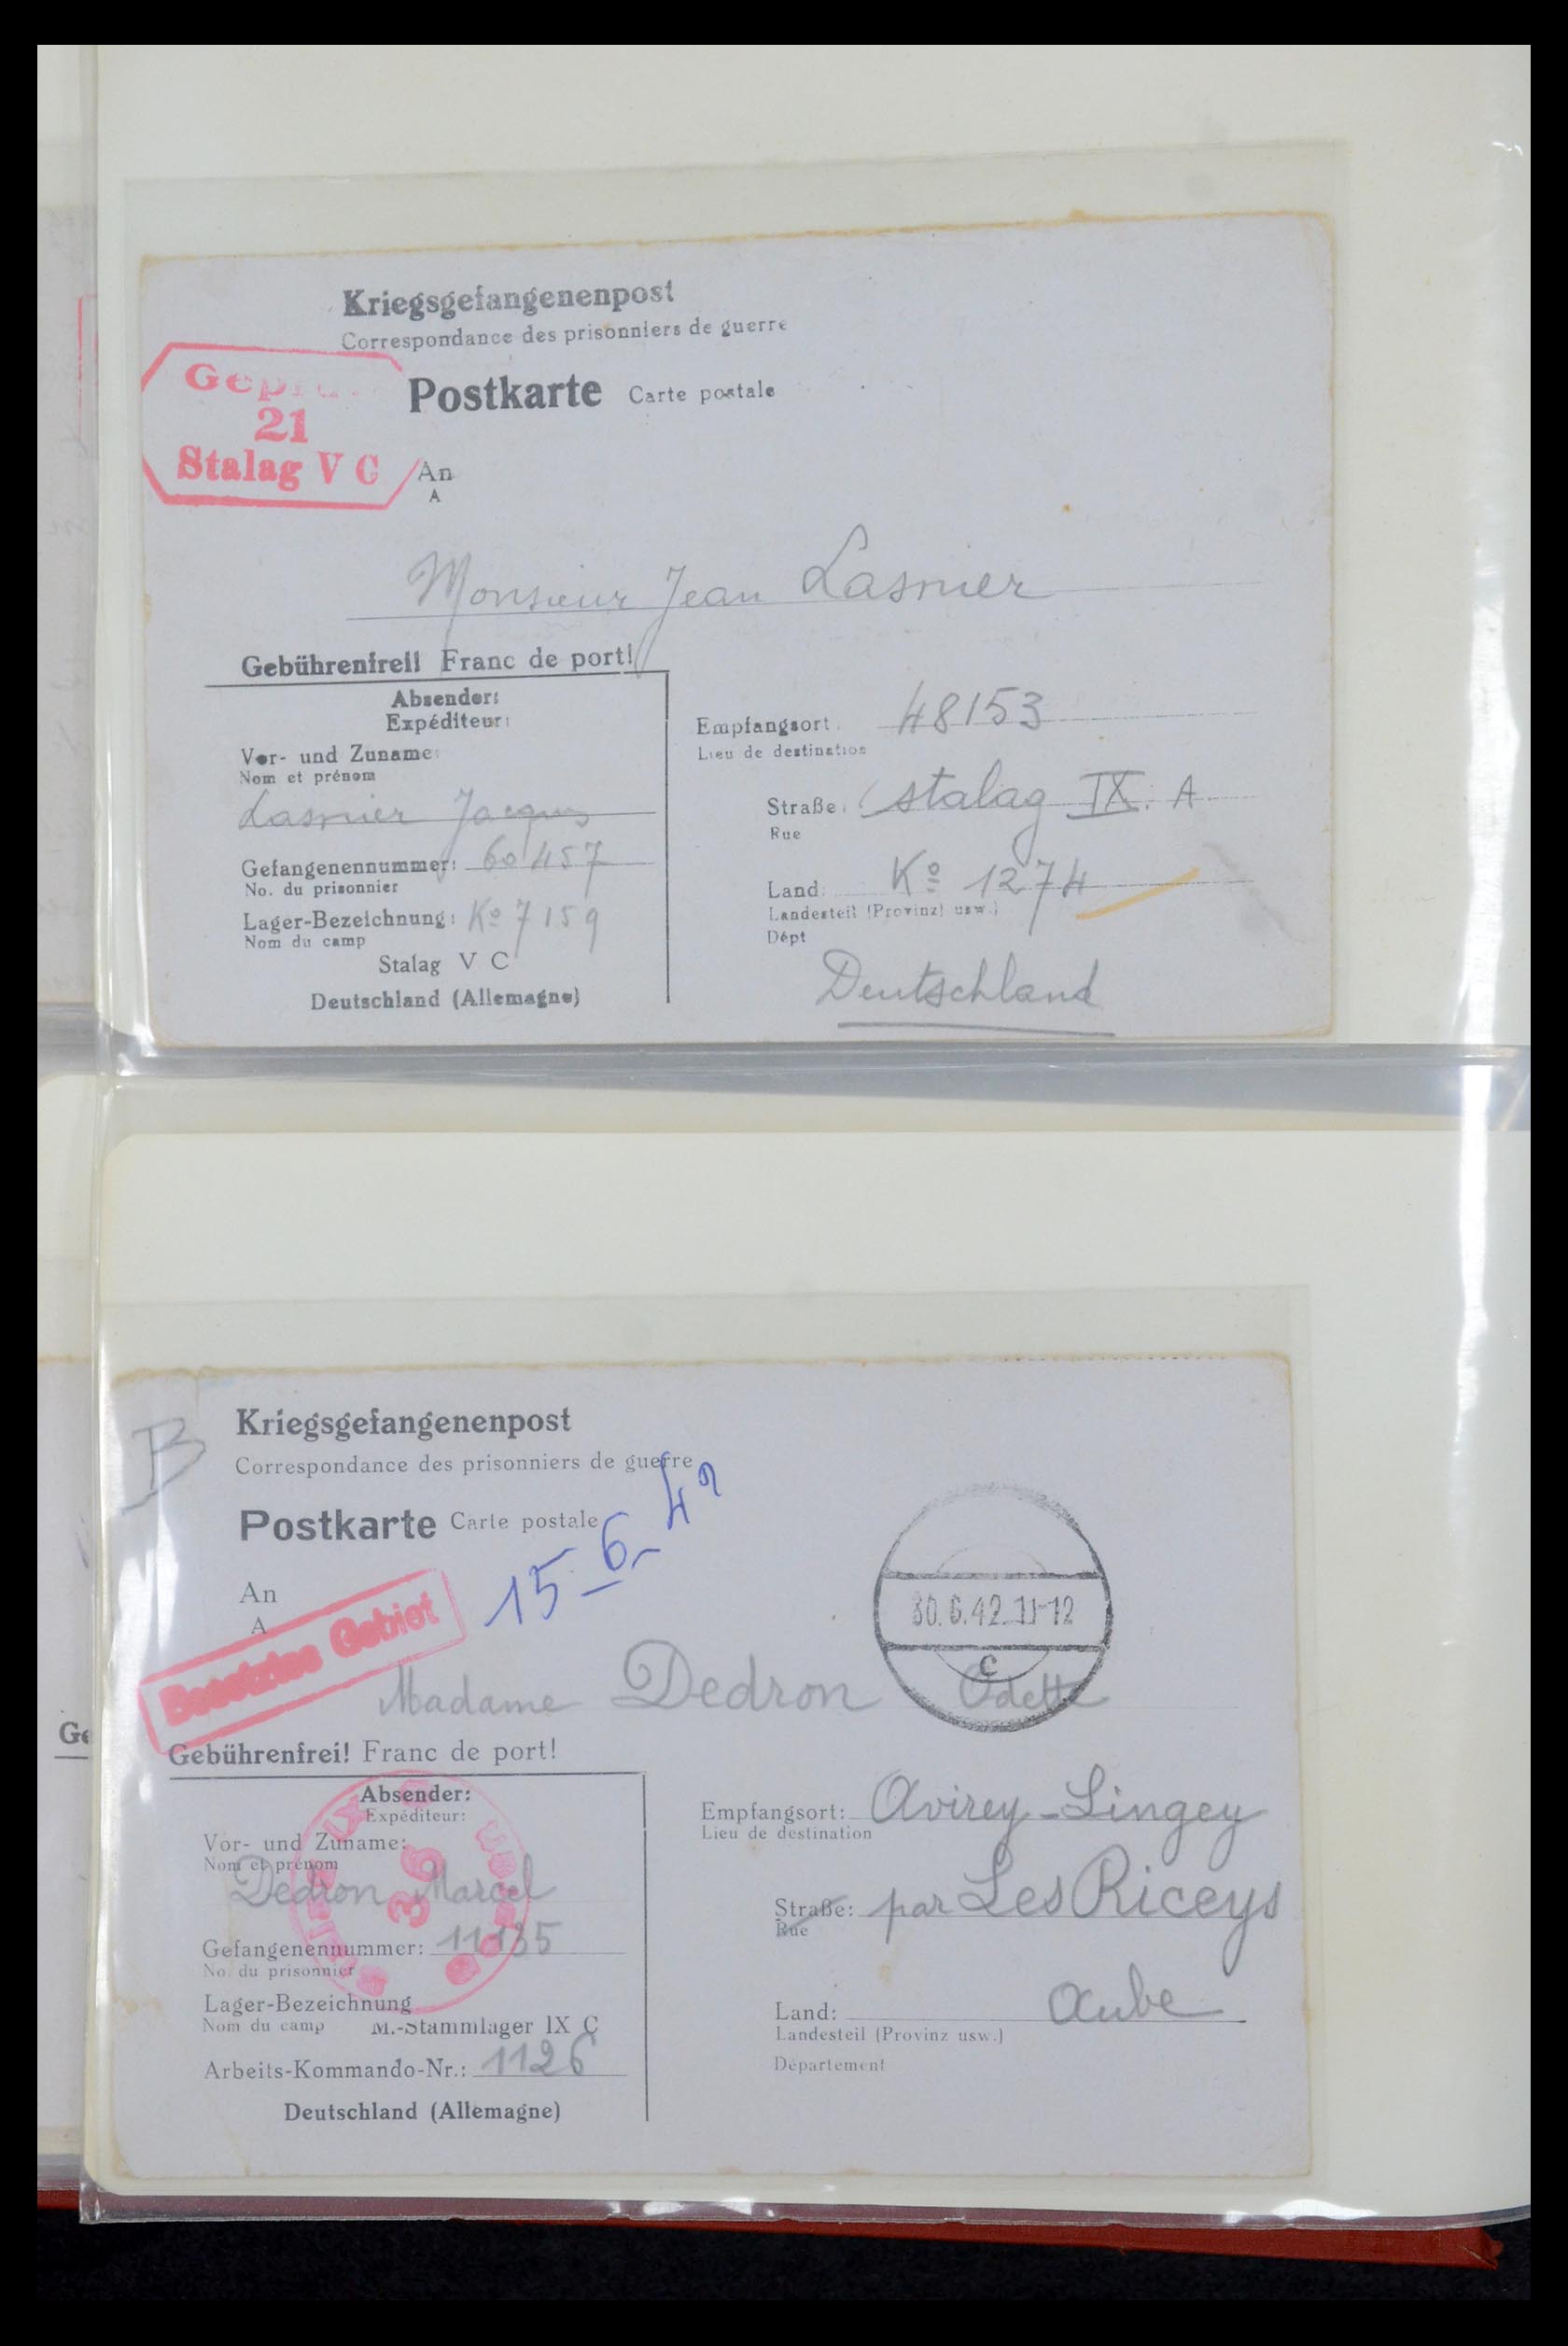 35599 018 - Stamp Collection 35599 Germany prisoner of war cards 1940-1944.